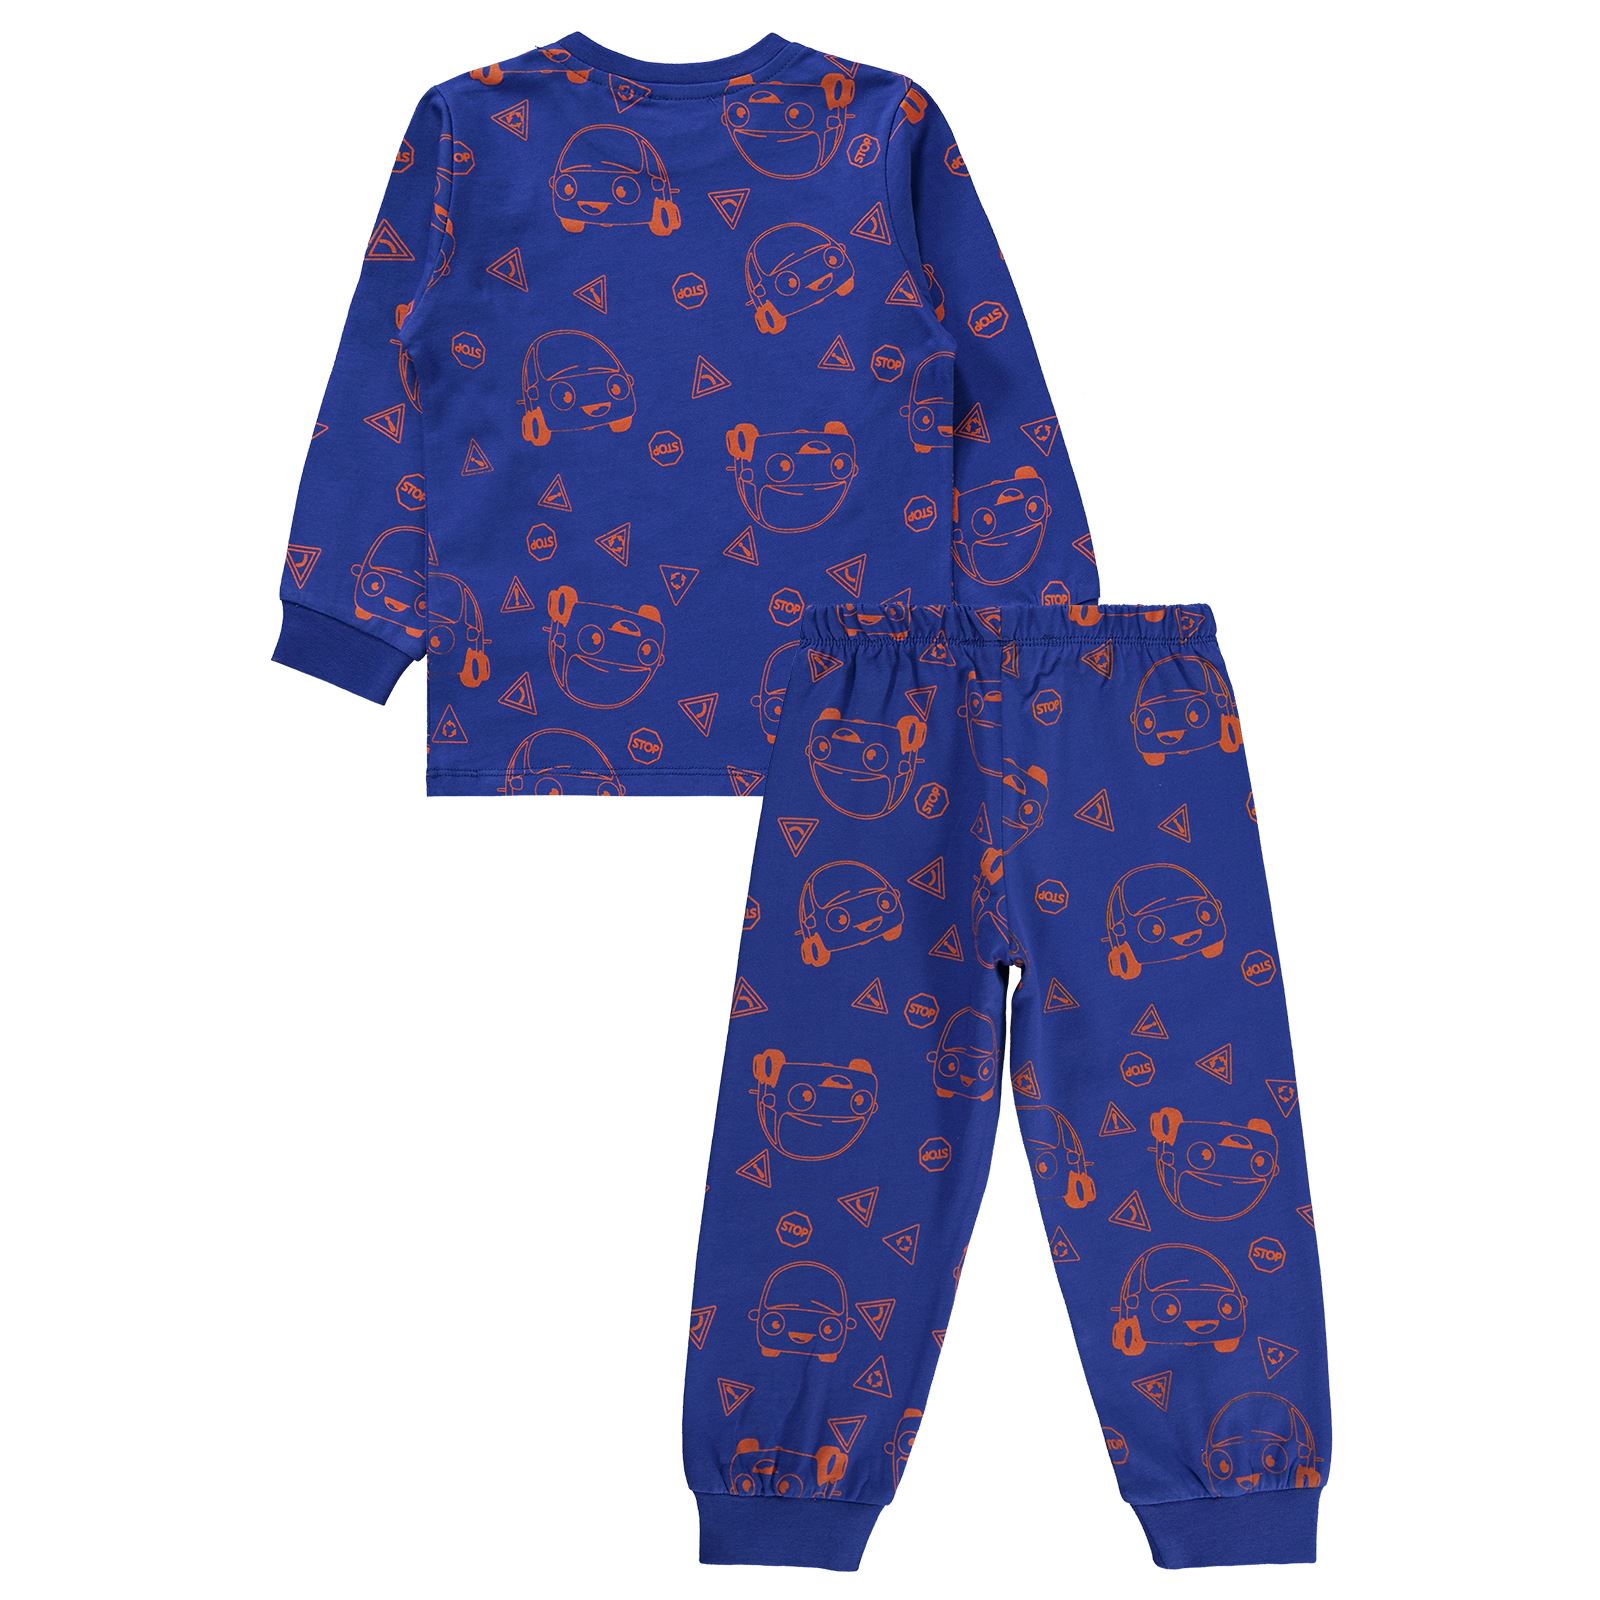 Kukuli Erkek Çocuk Pijama Takımı 2-5 Yaş Saks Mavisi